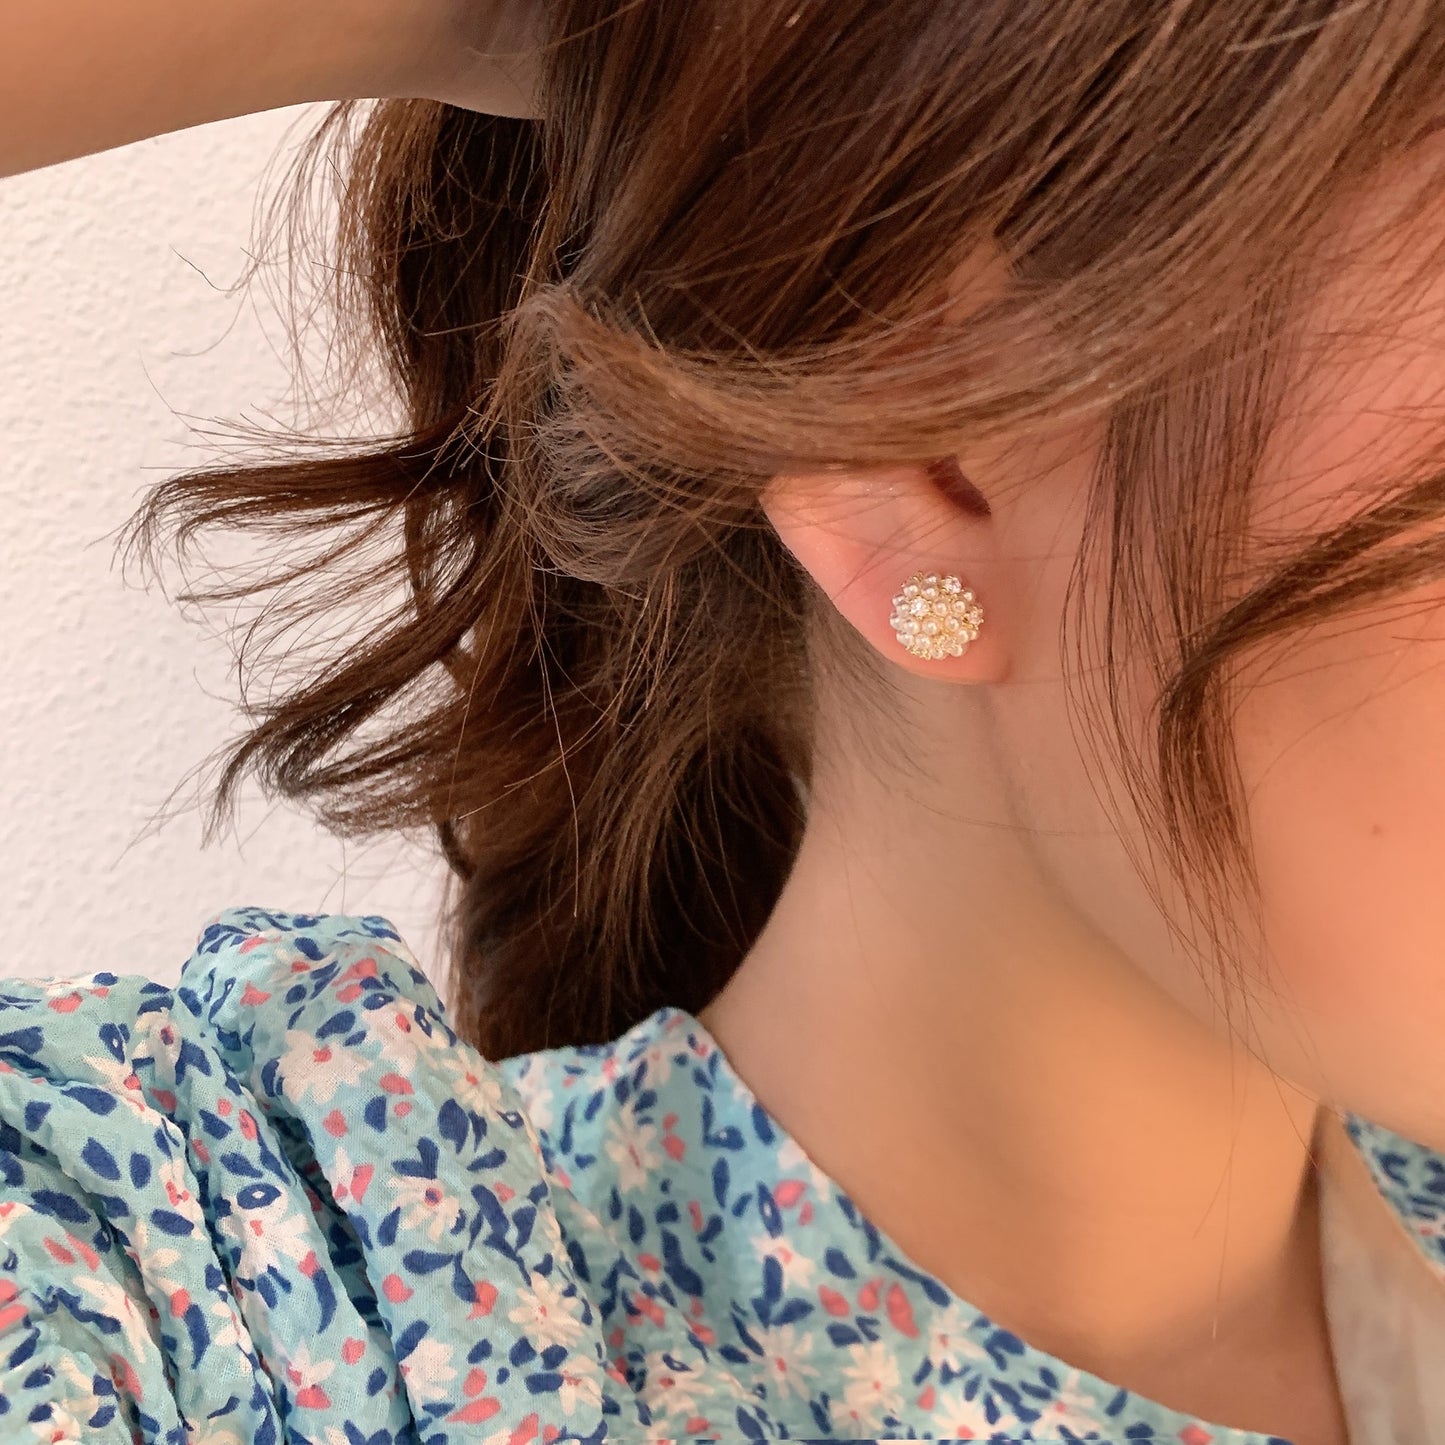 Women's Pearl Mild Luxury Retro High-grade Small Earrings